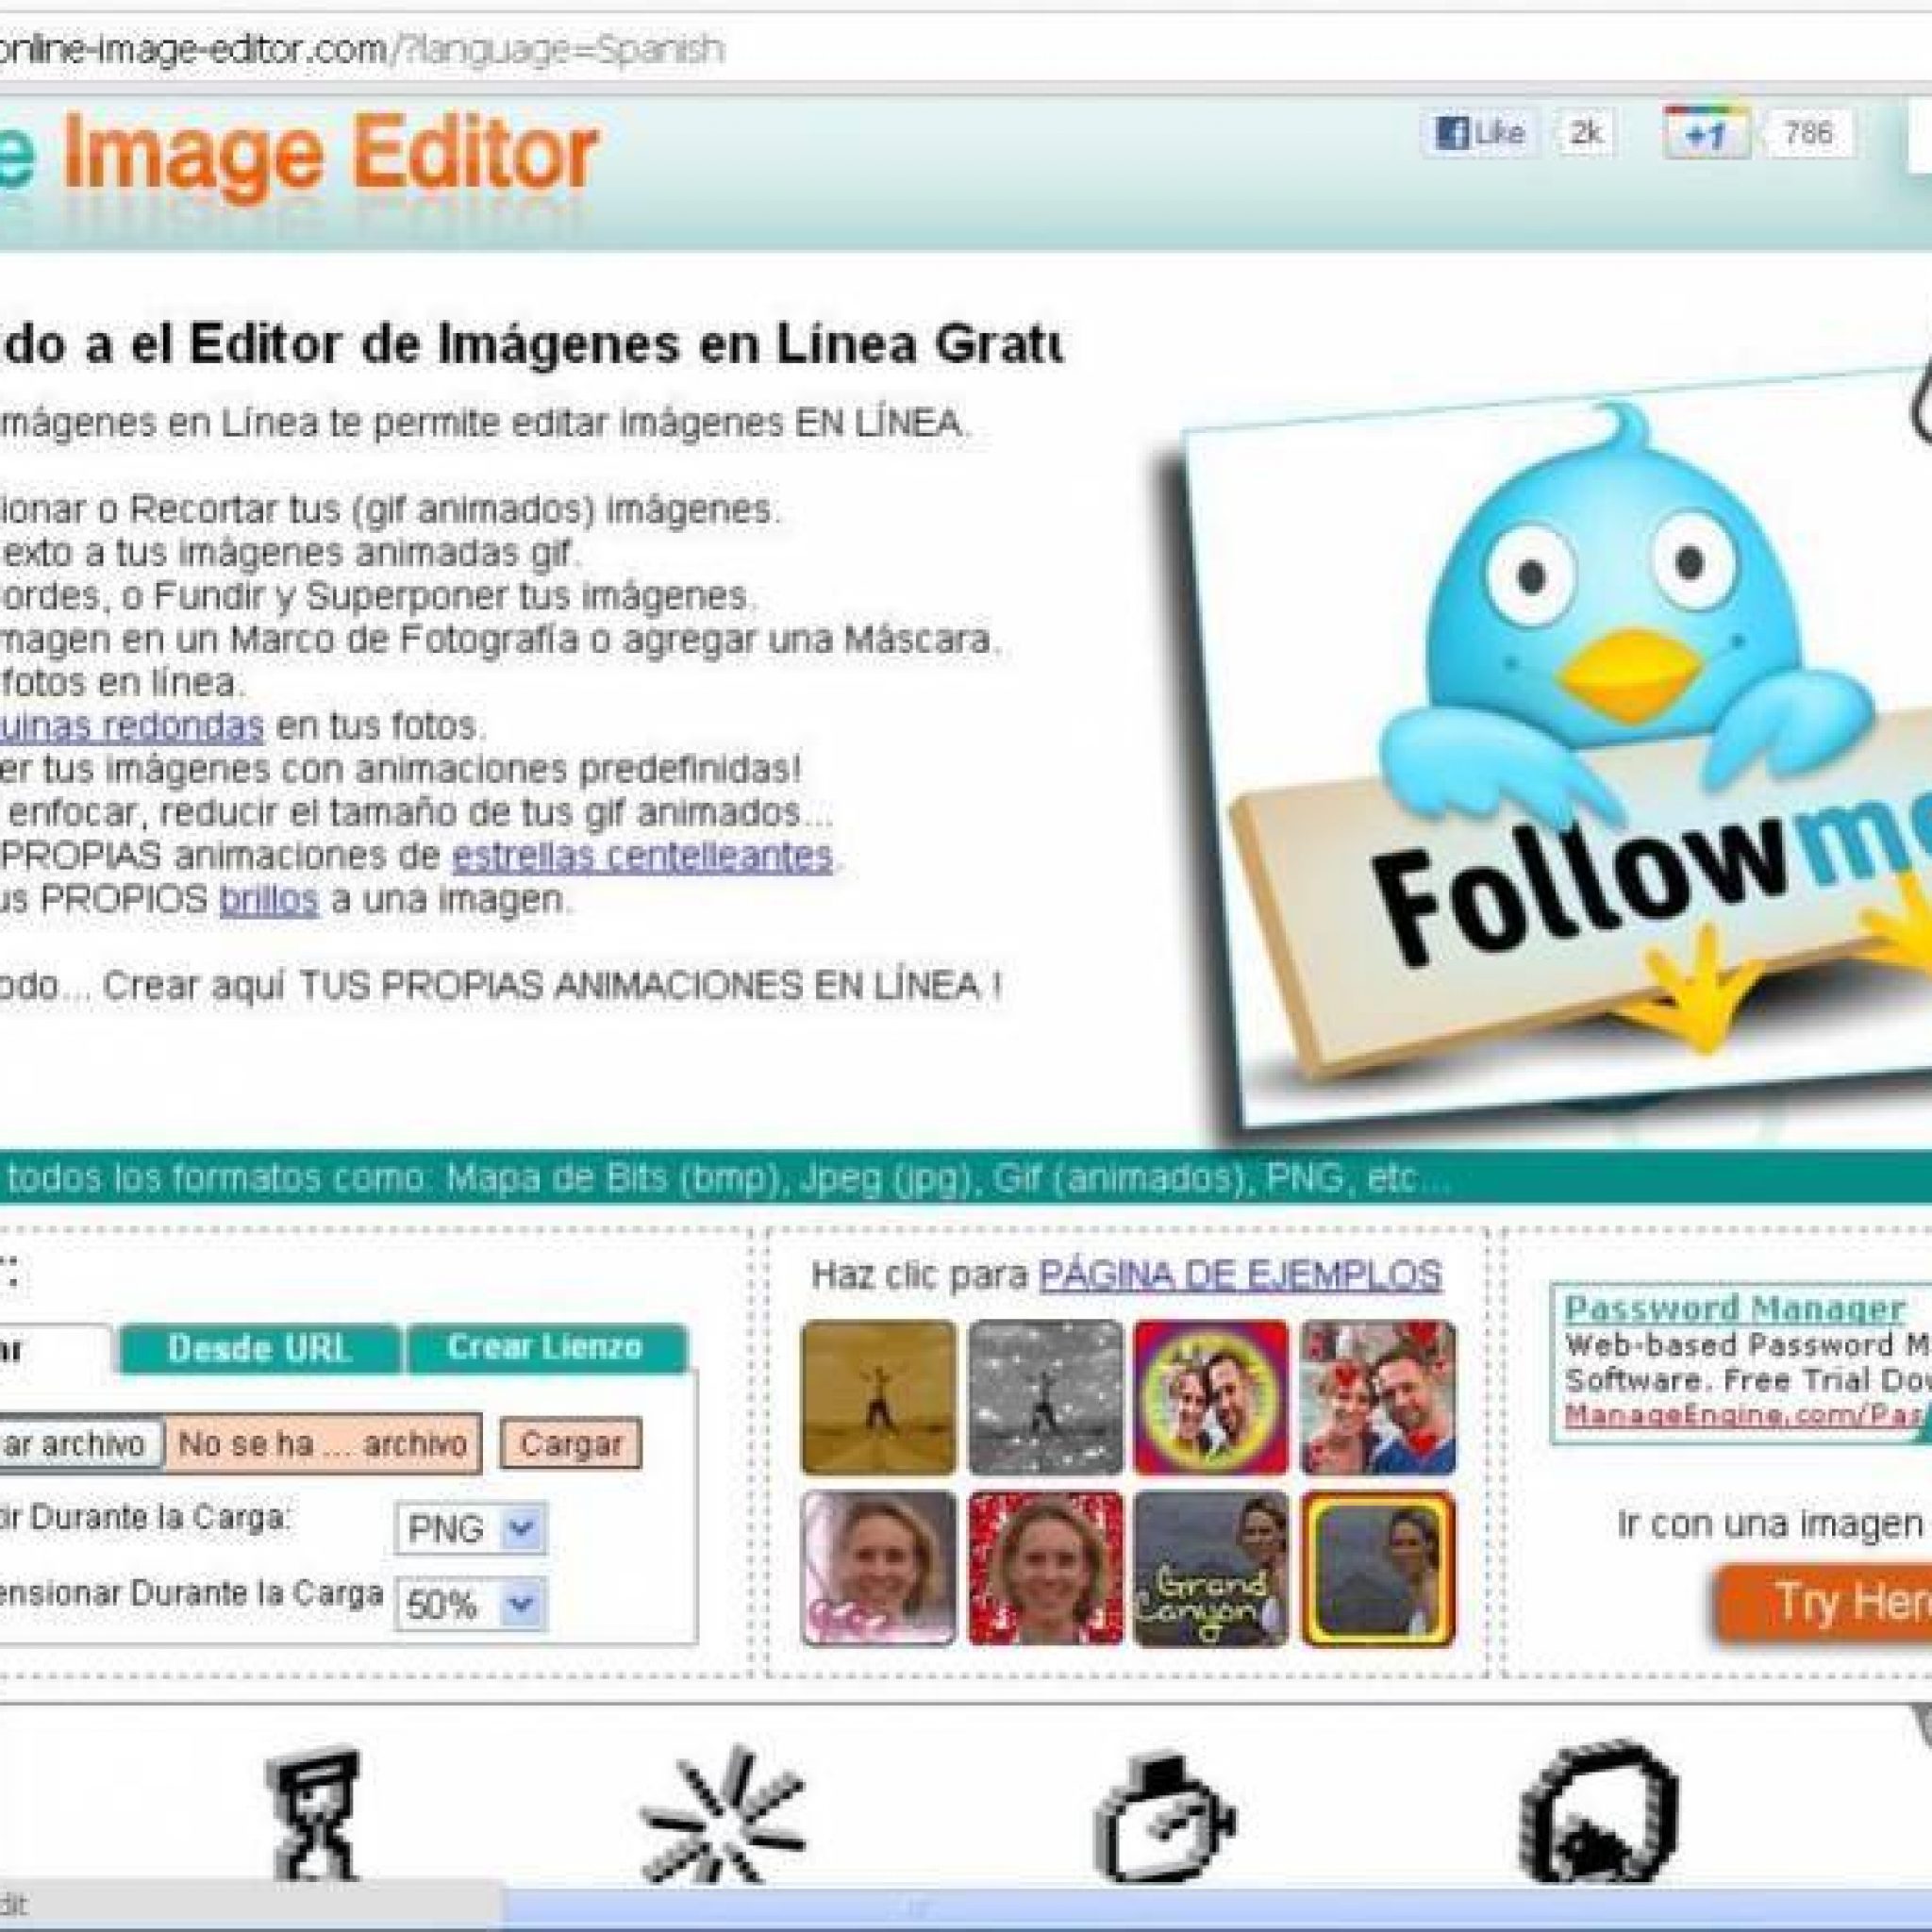 Online Image Editor: Editando Imágenes Online. Incluso Imágenes Animadas